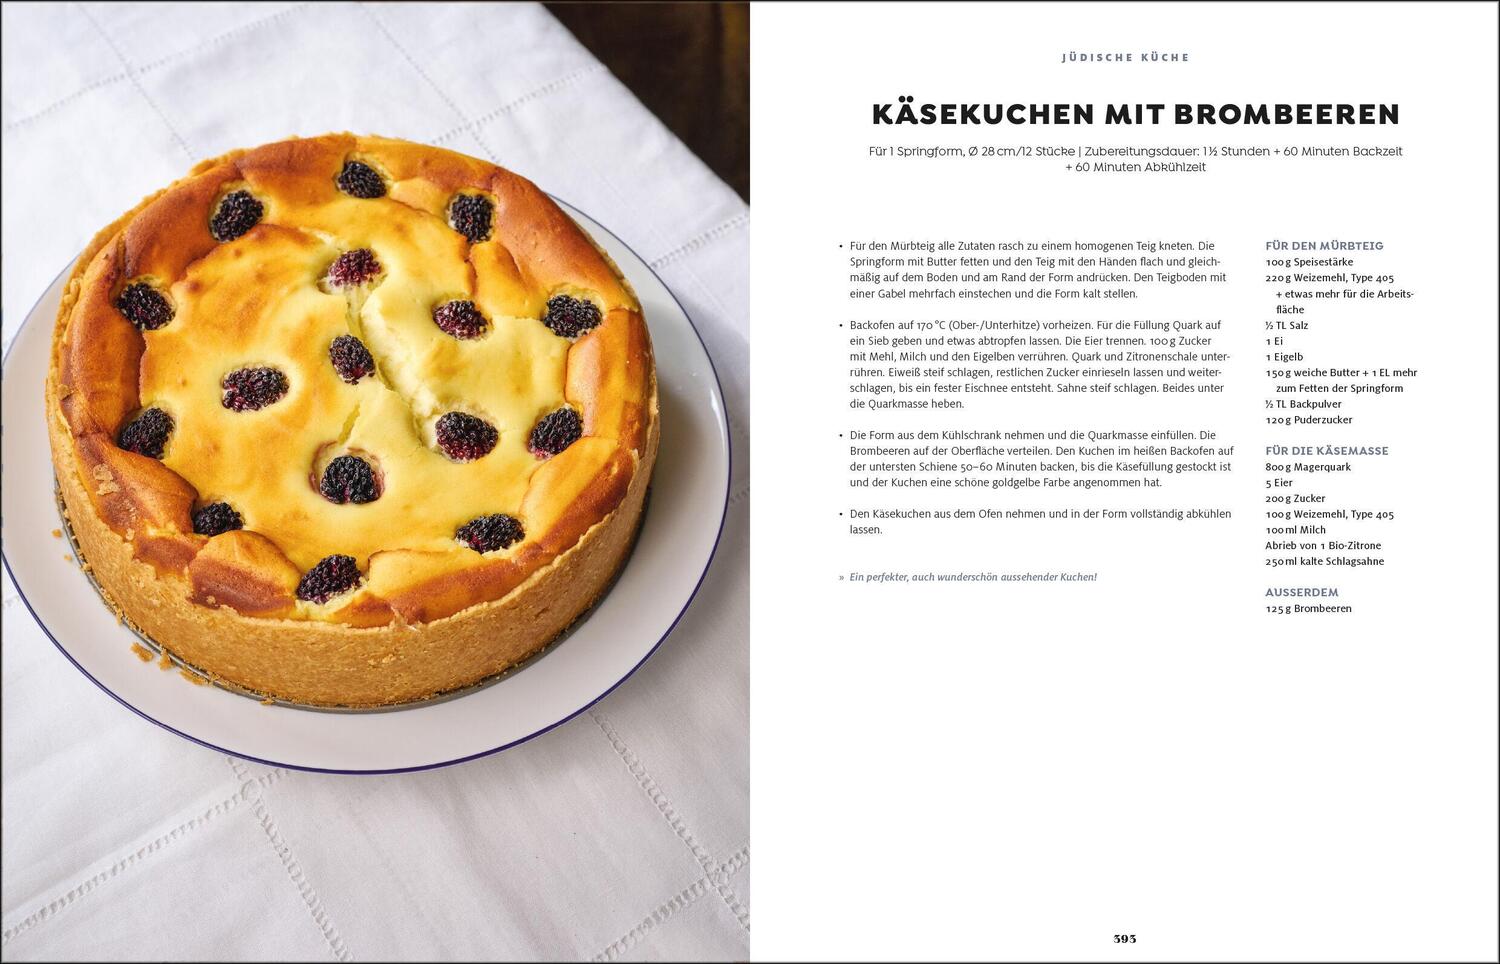 Bild: 9783517102191 | Deutsche Küche | Über 200 Rezepte aus ganz Deutschland | Rach | Buch